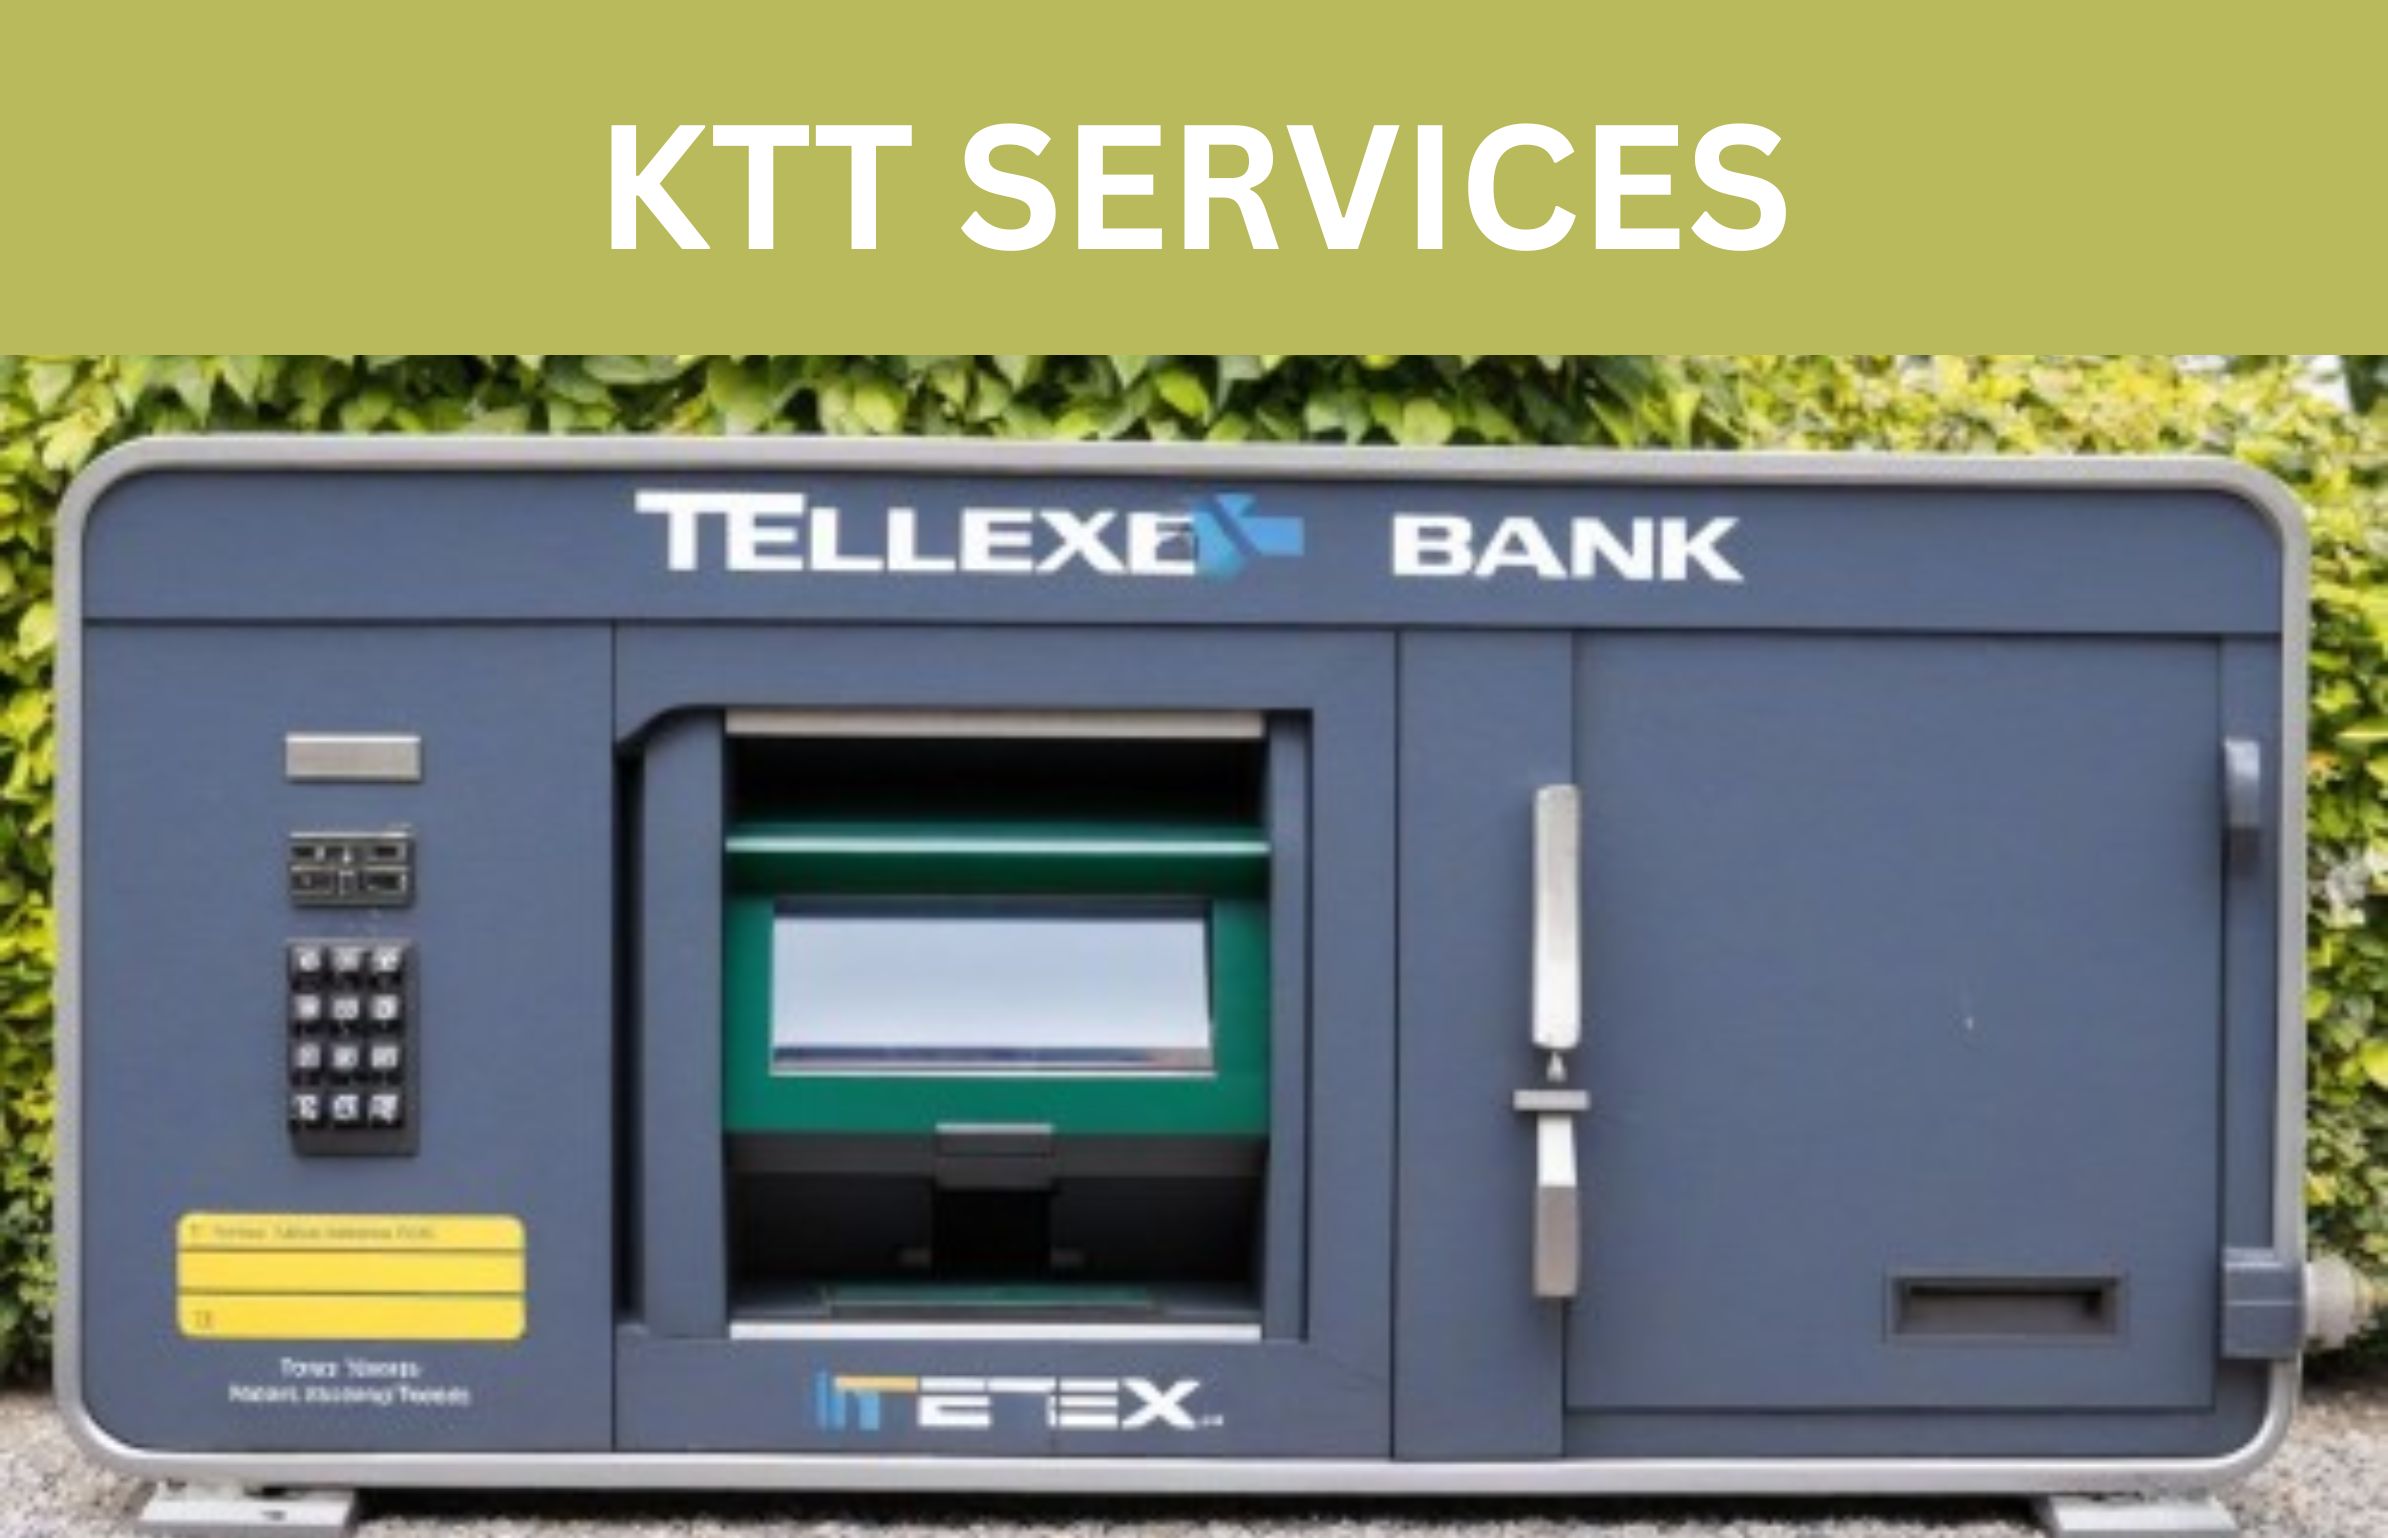 KTT Services